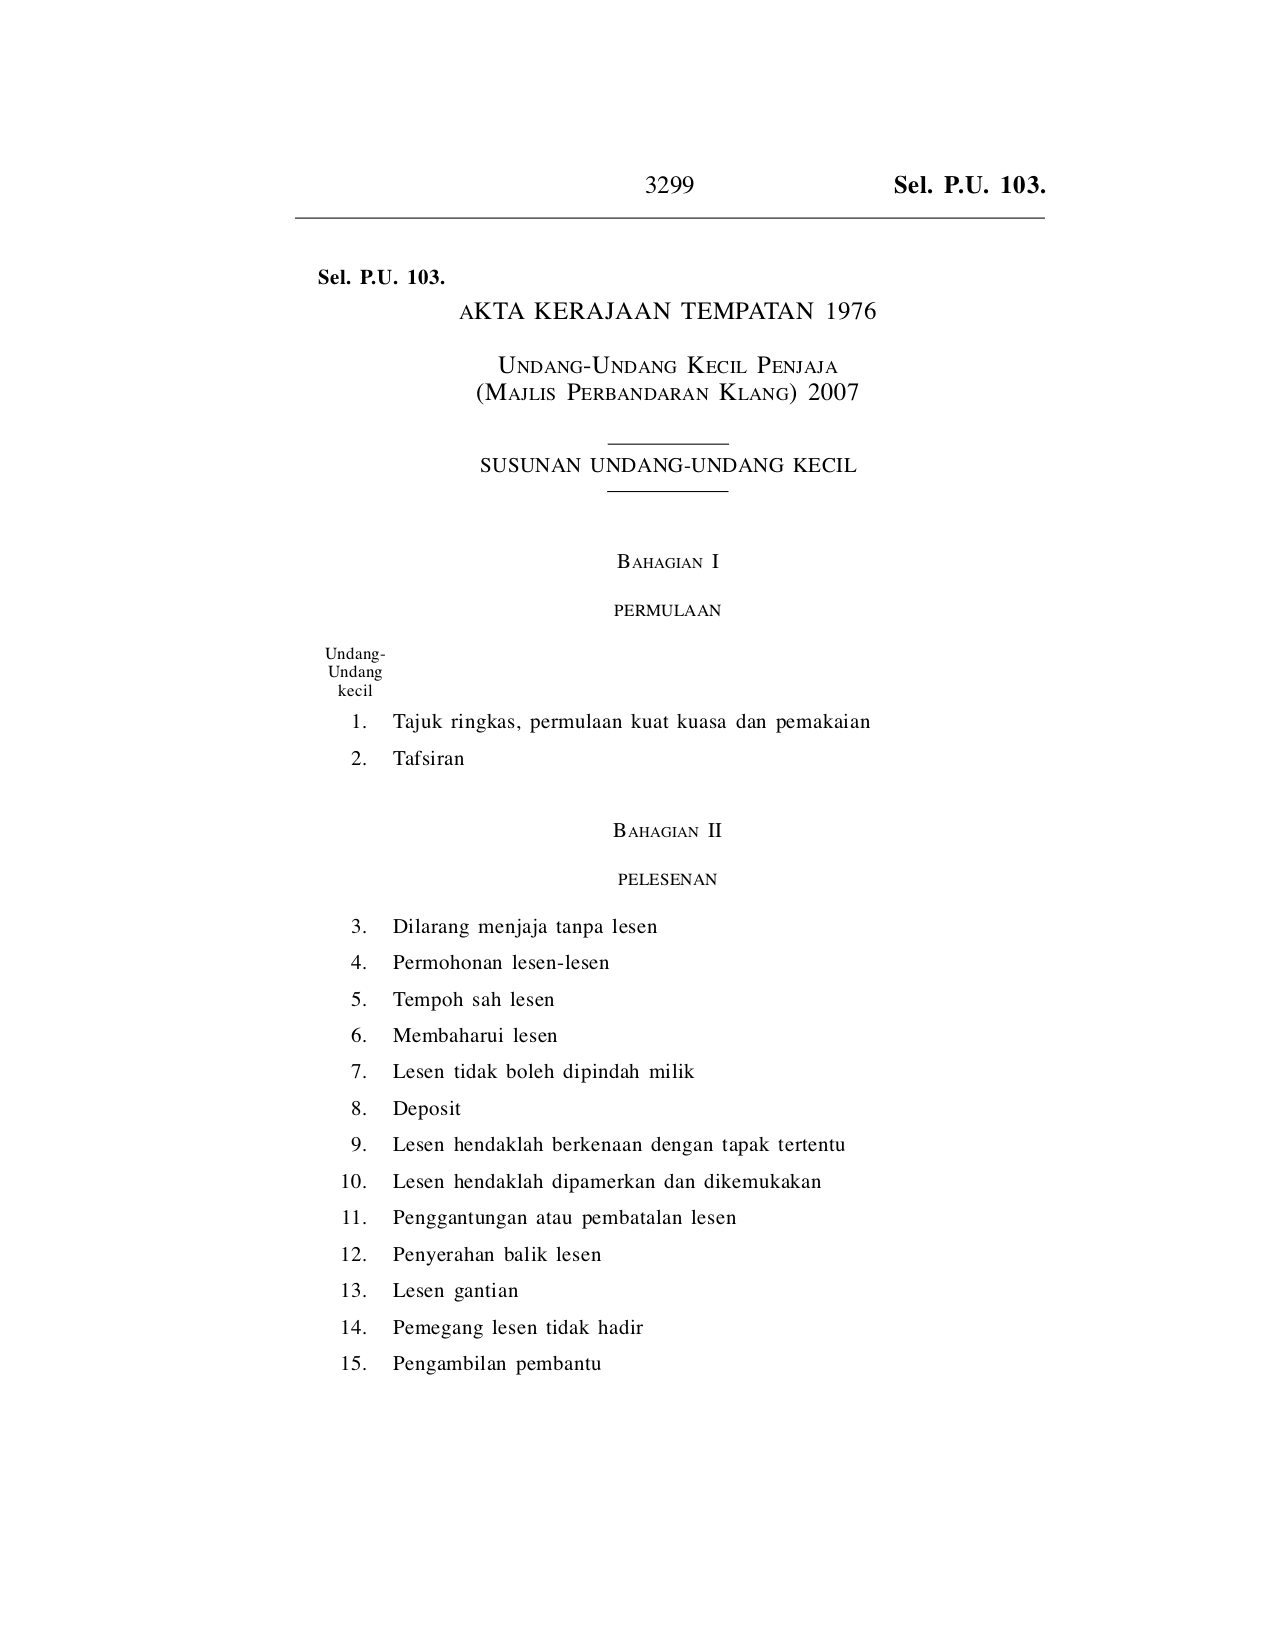 Undang-Undang Kecil Penjaja (Majlis Perbandaran Klang) 2007 - Akta Kerajaan Tempatan 1976